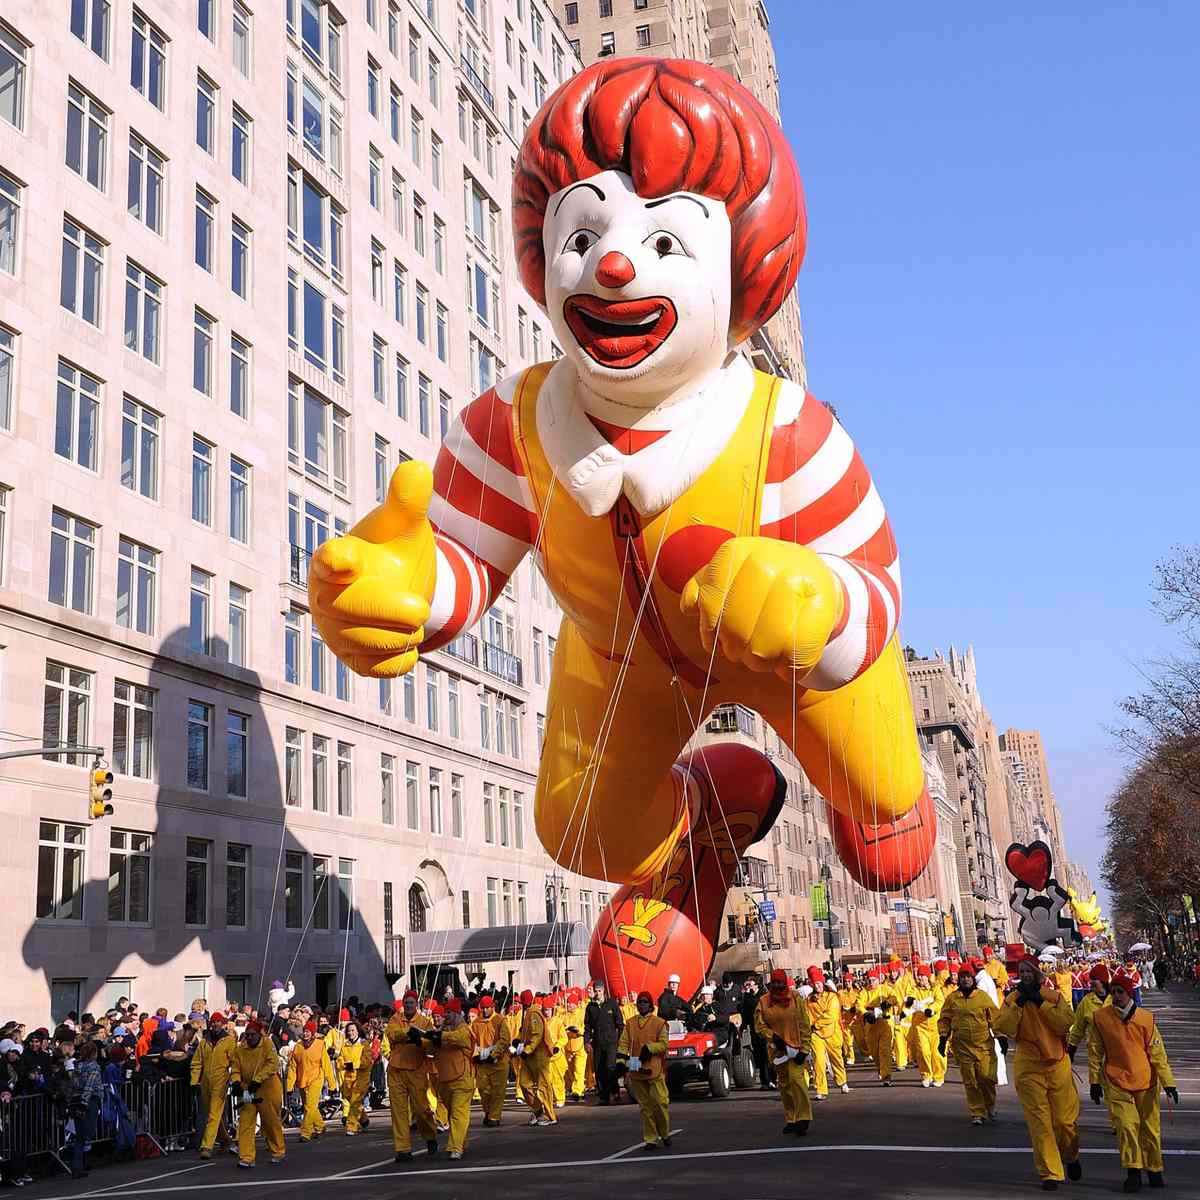 ronald mcdonald float at thanksgiving parade